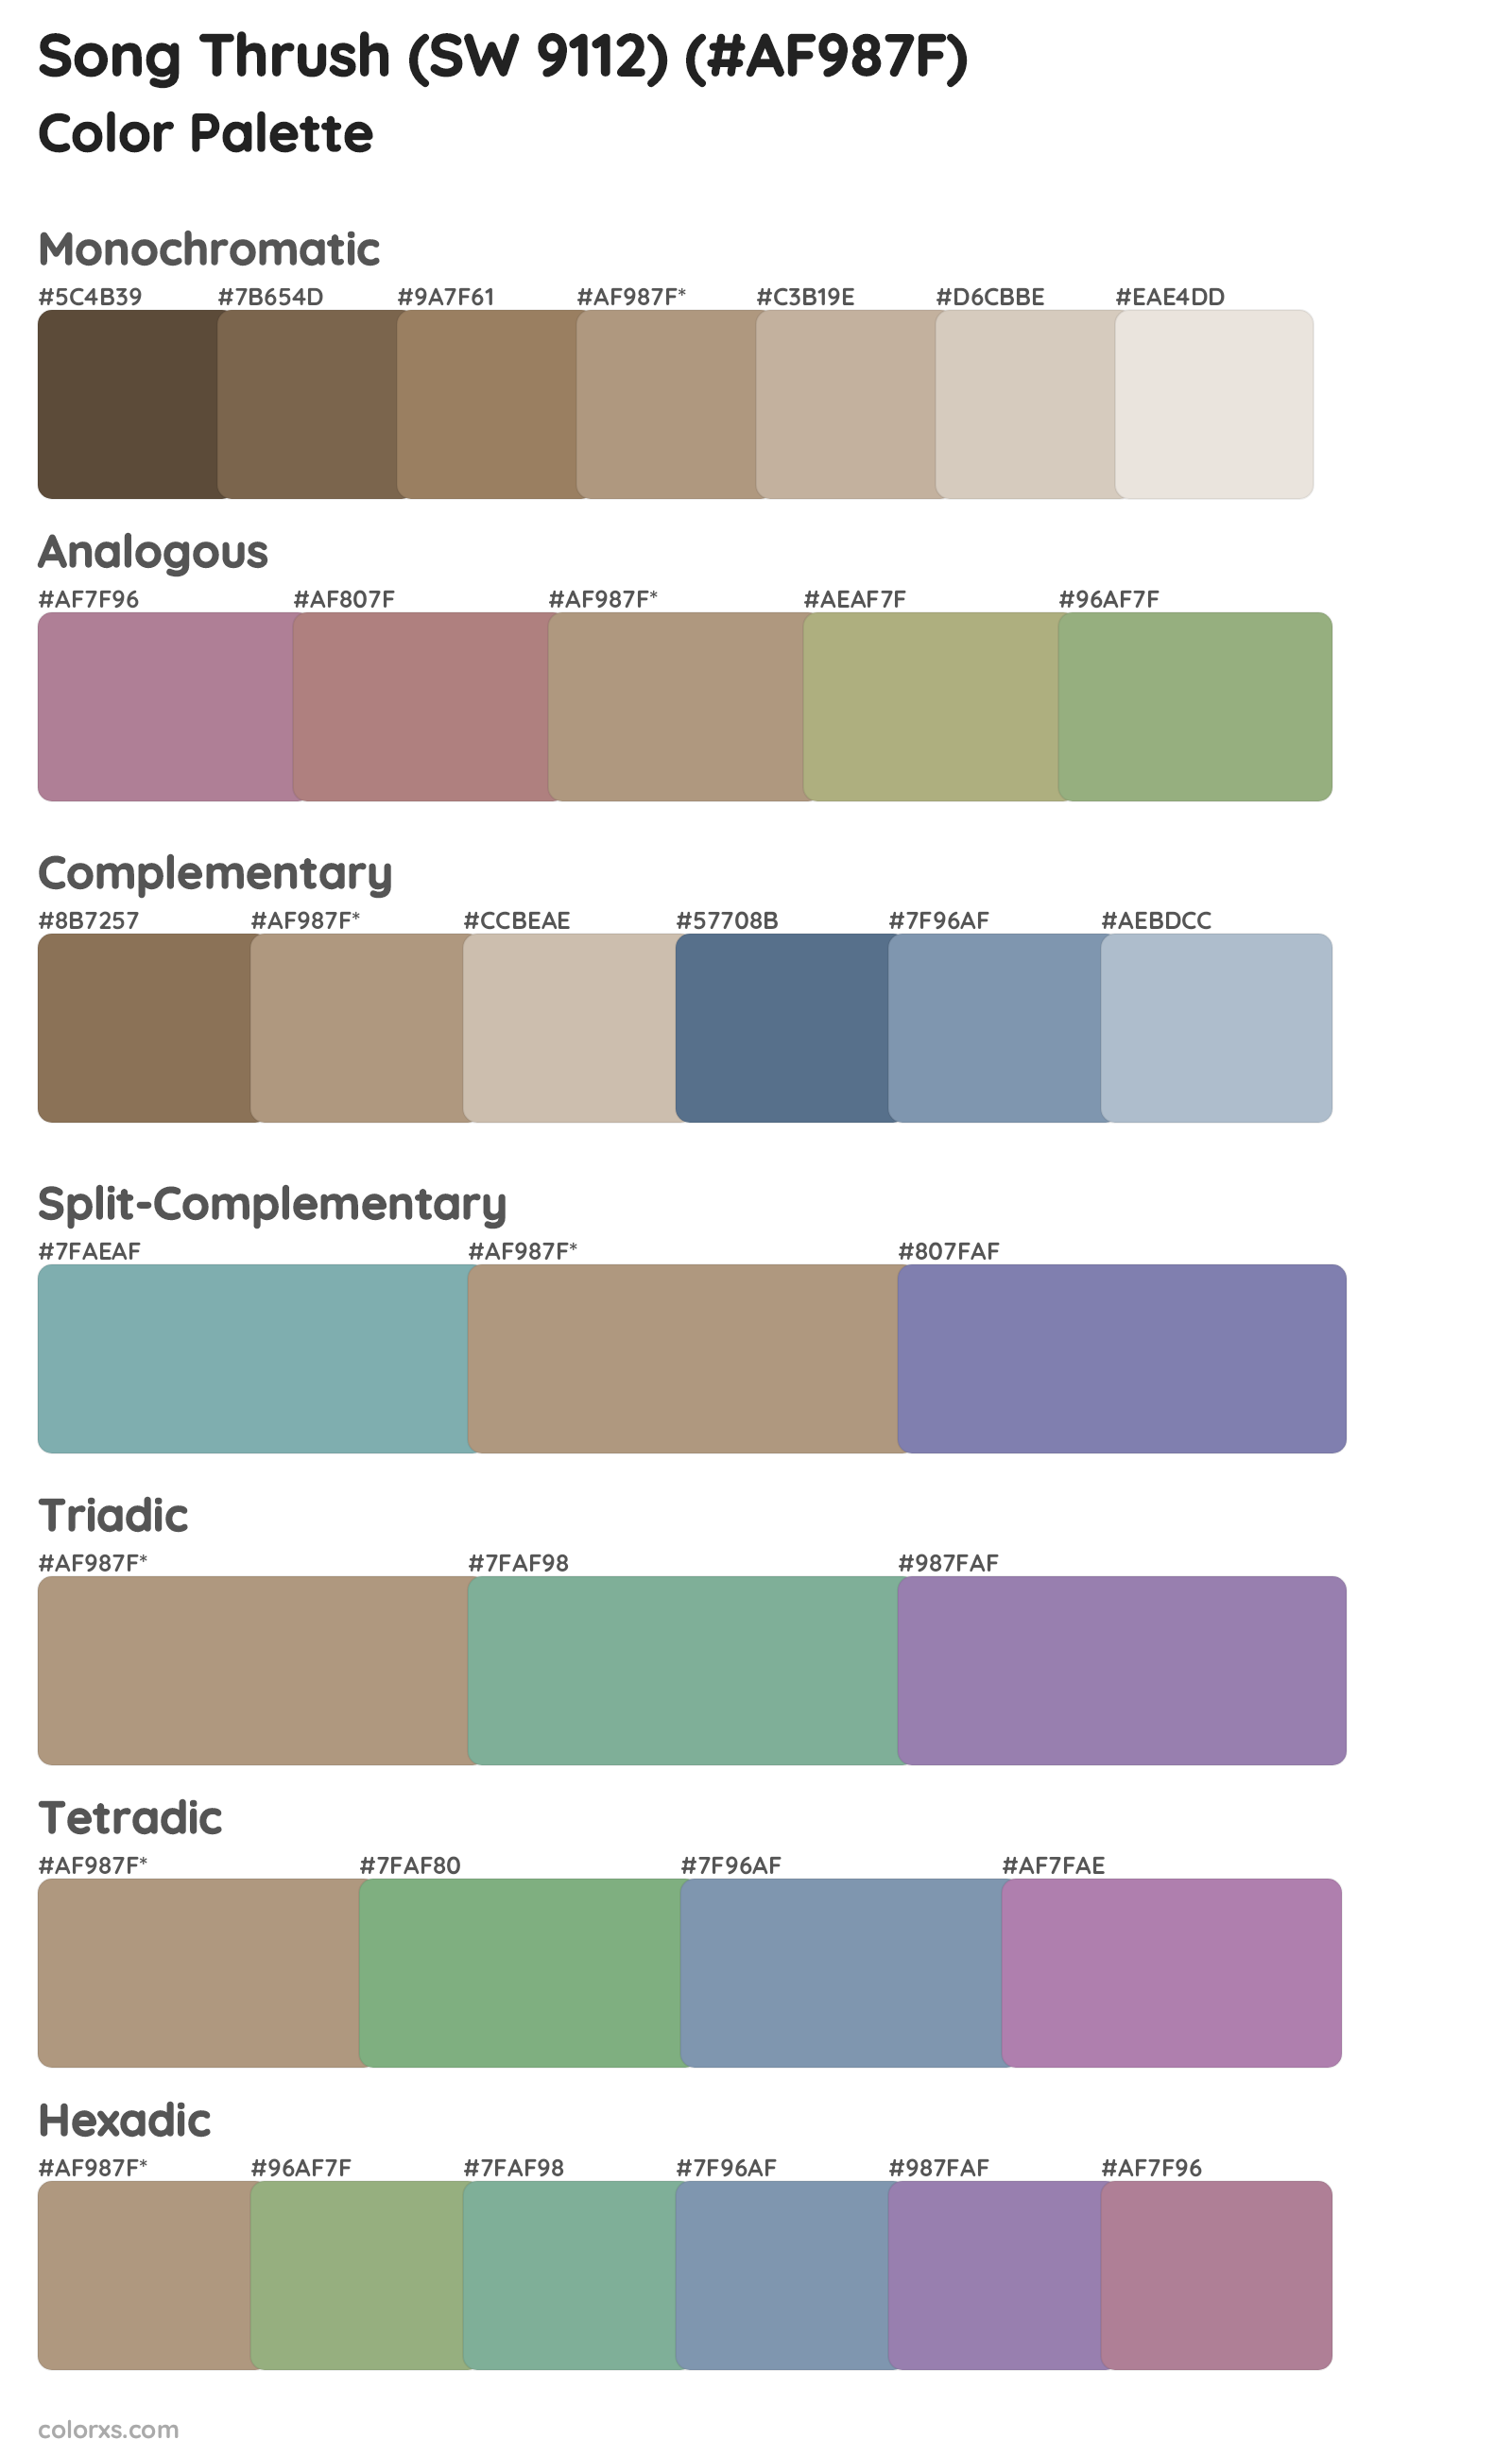 Song Thrush (SW 9112) Color Scheme Palettes